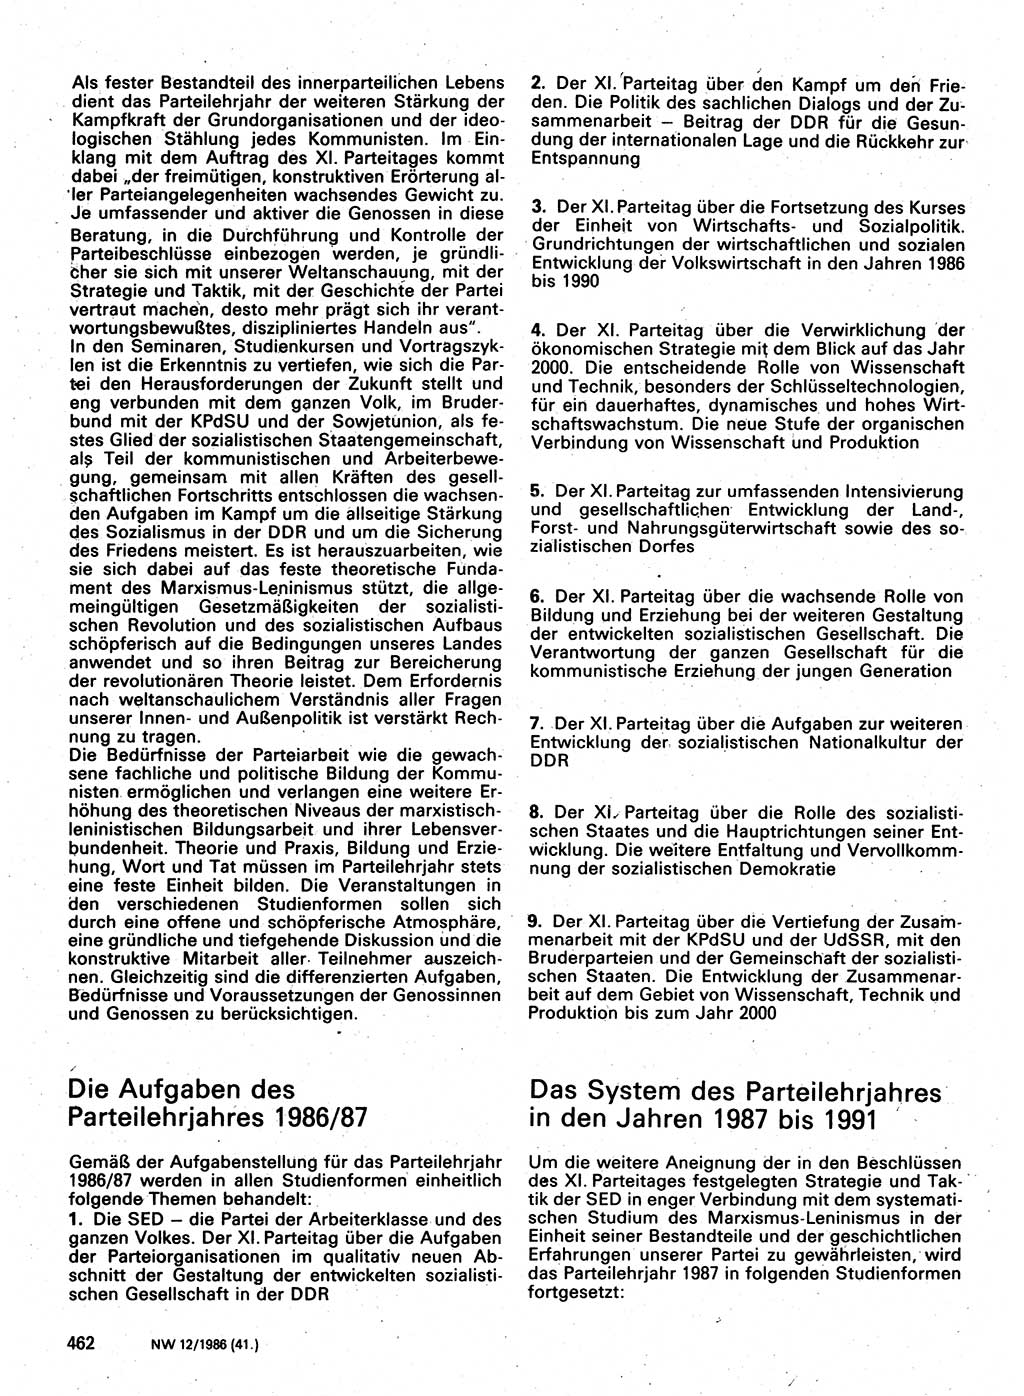 Neuer Weg (NW), Organ des Zentralkomitees (ZK) der SED (Sozialistische Einheitspartei Deutschlands) für Fragen des Parteilebens, 41. Jahrgang [Deutsche Demokratische Republik (DDR)] 1986, Seite 462 (NW ZK SED DDR 1986, S. 462)